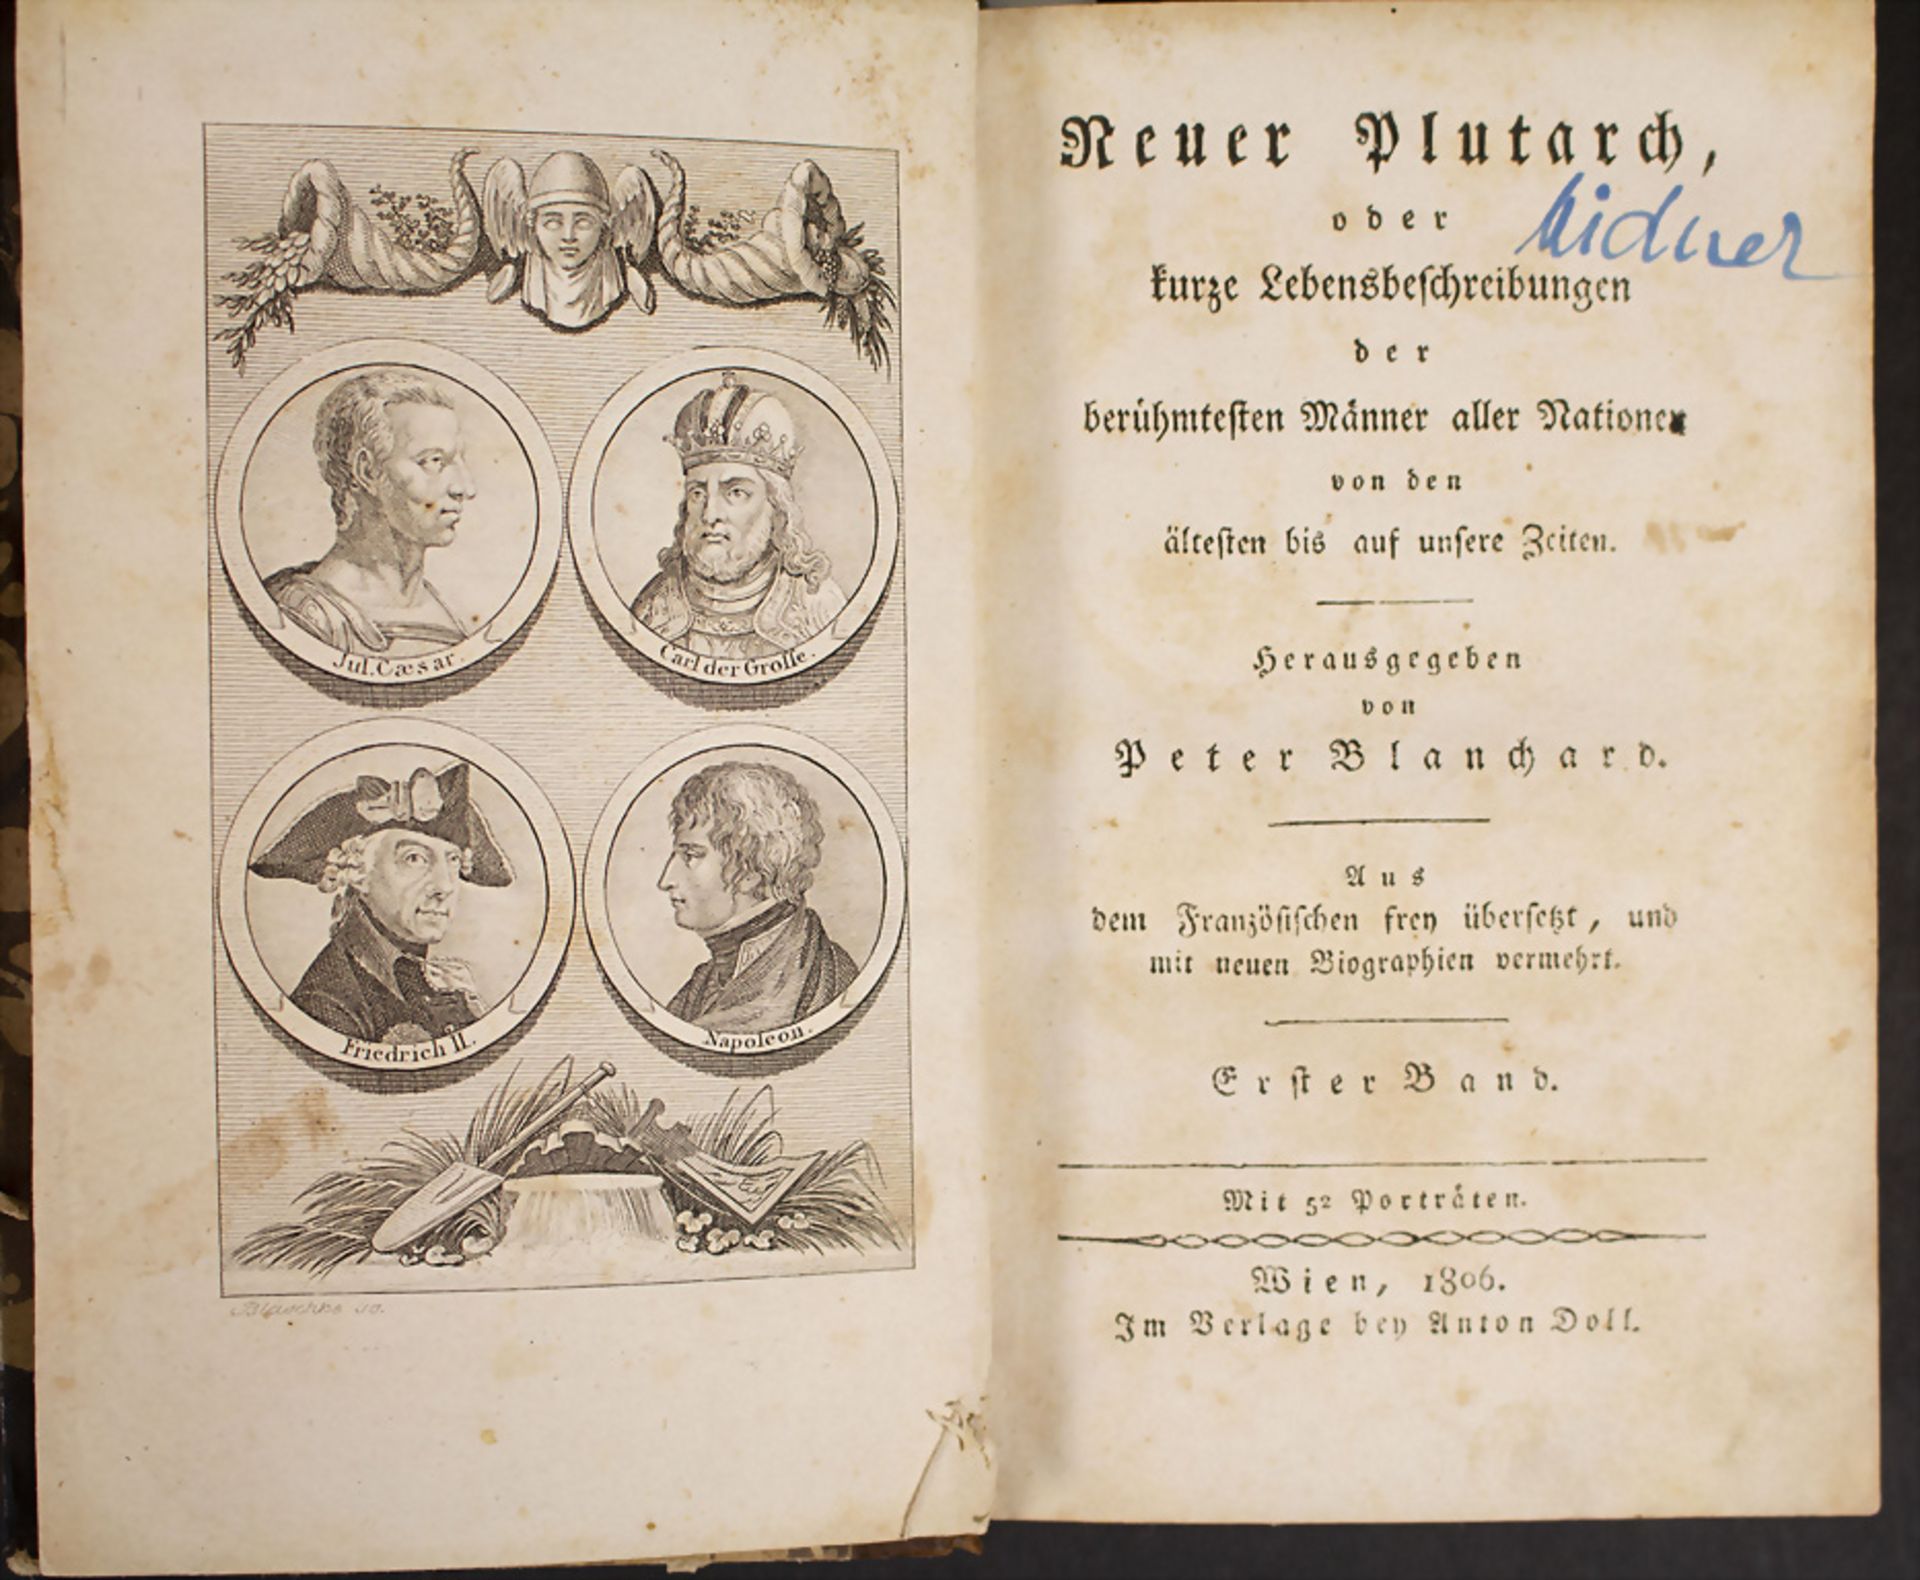 Peter Blanchard (Hrsg.): 'Neuer Plutarch' oder kurze Lebensbeschreibungen...', Wien, 1806